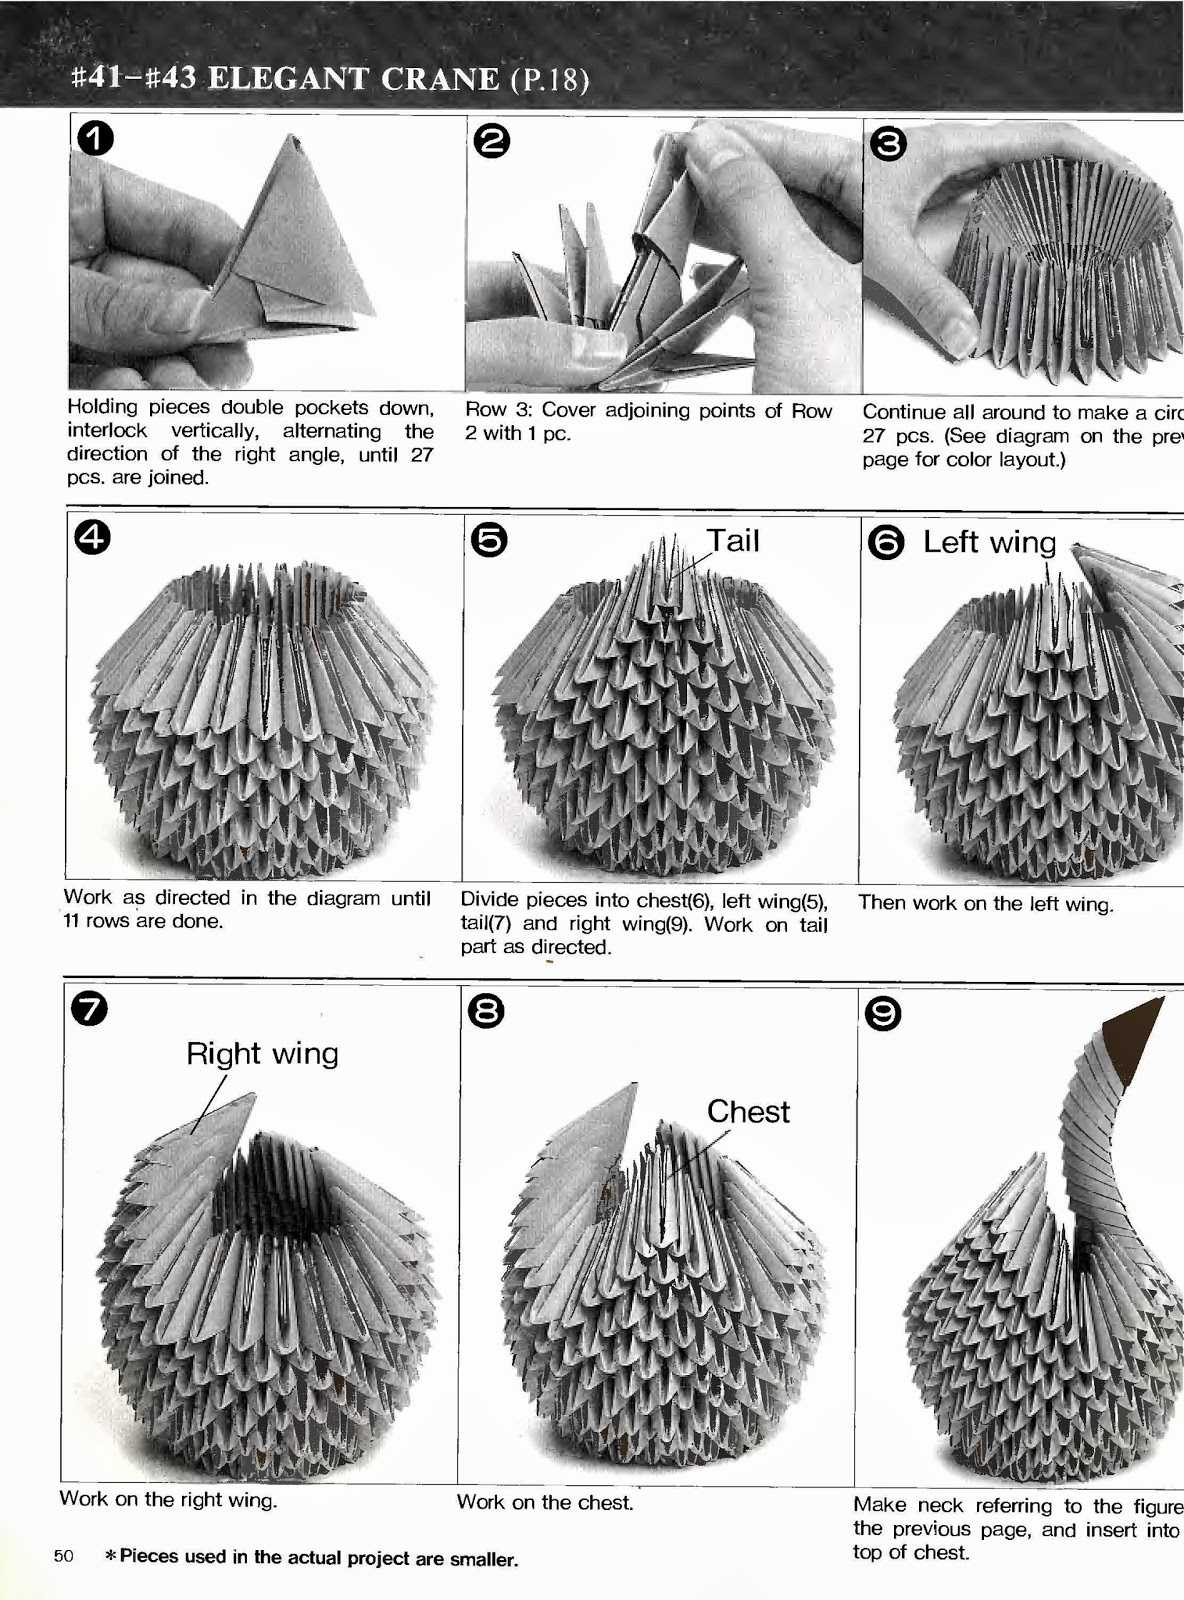 Лебедь оригами: 125 фото и видео инструкция сборки красивого бумажного лебедя